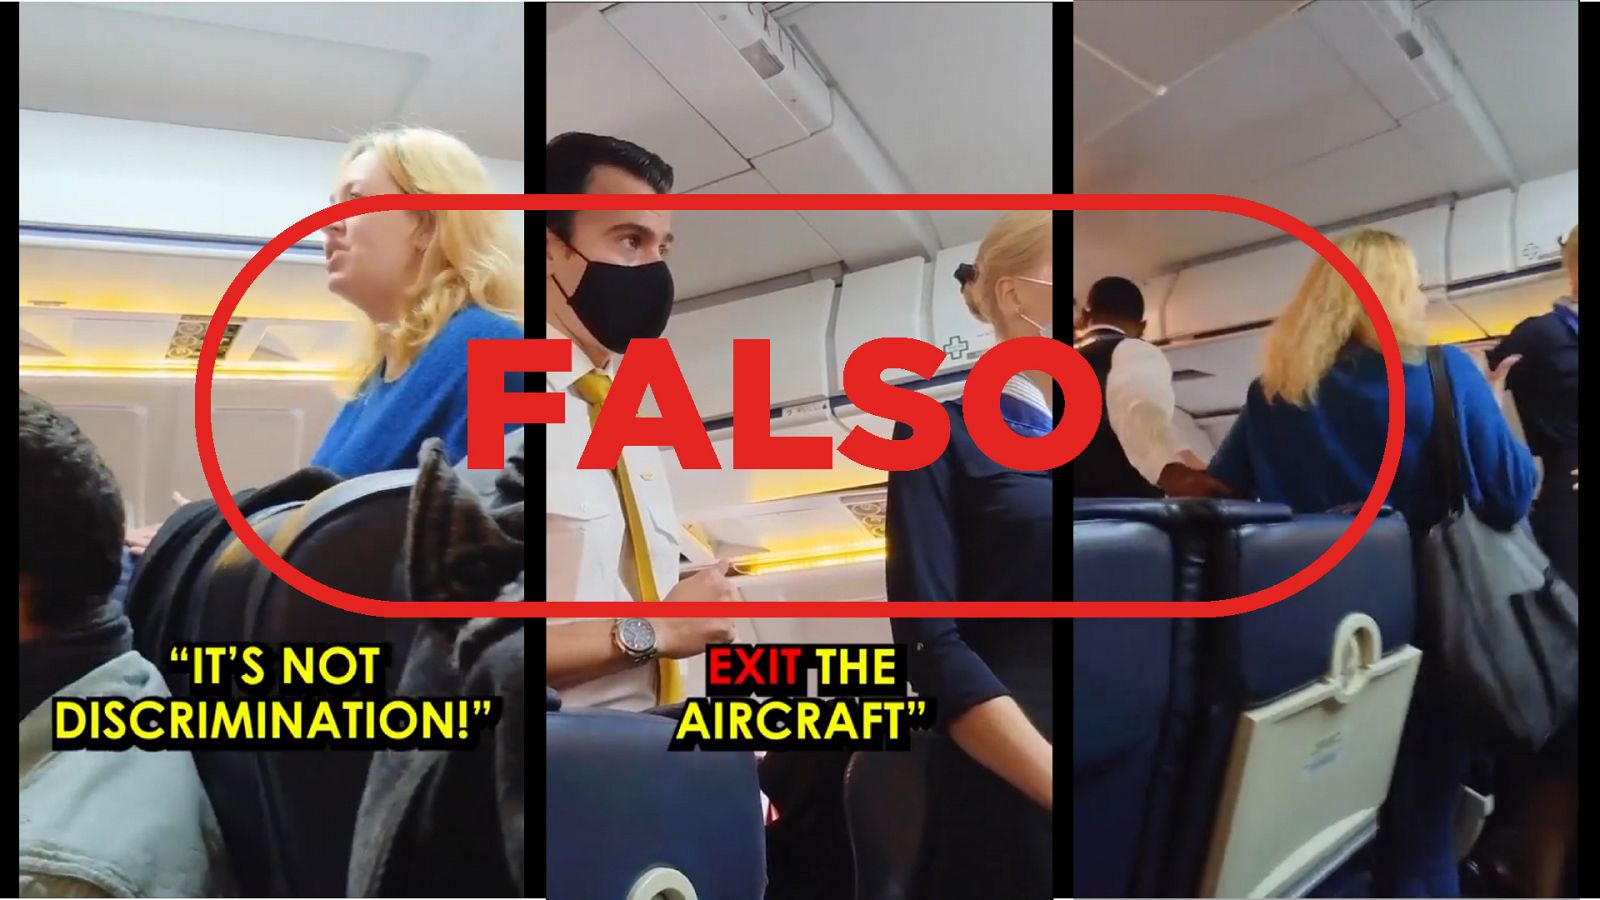 Varios momentos del vídeo falso de la pasajera expulsada: uno en el que se está quejando, otro en el que el piloto le pide salir del avión y cuando finalmente sale, con el sello "Falso" en rojo